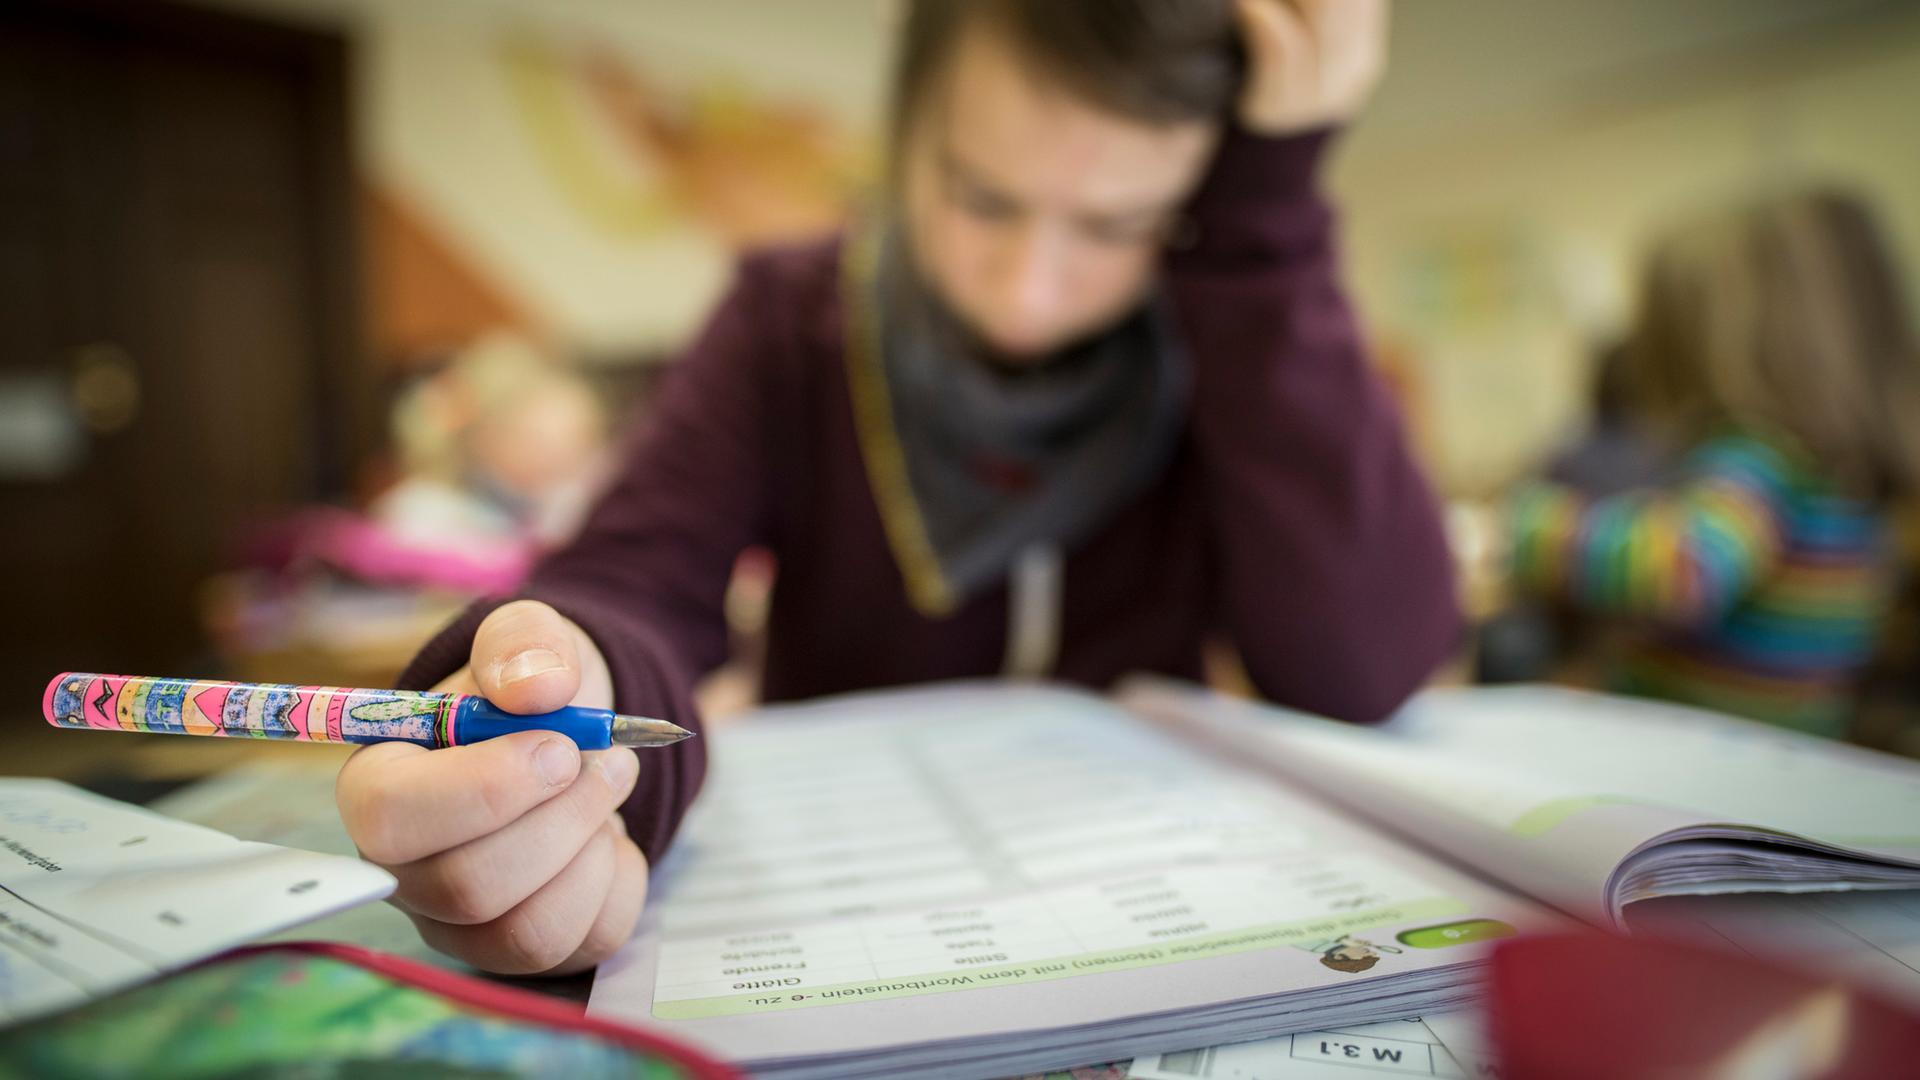 Ein Schüler liest konzentriert während des Unterrichts. In der Hand hält er einen Füllfederhalter.